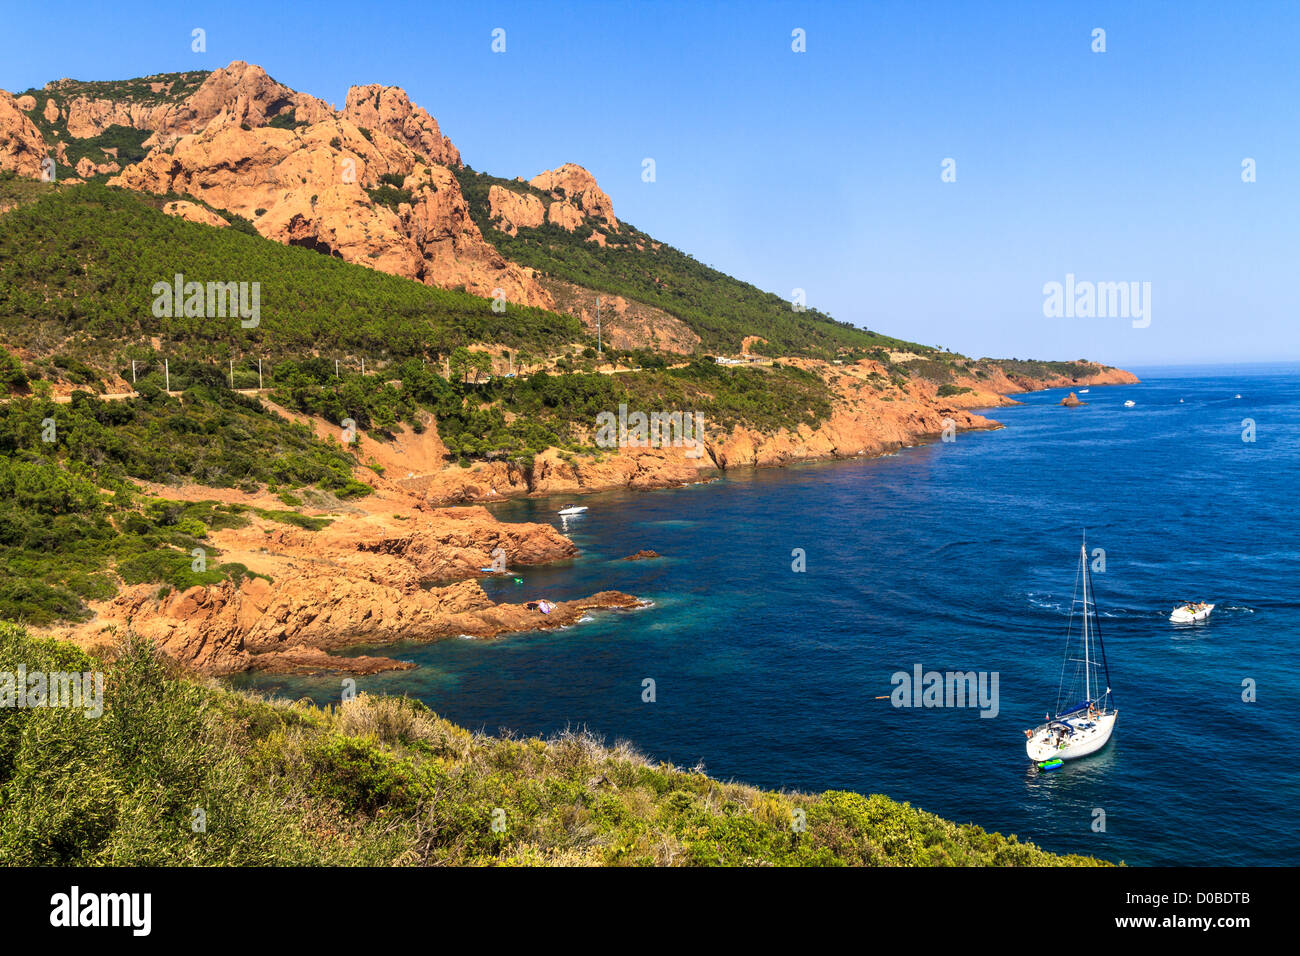 Belle côte pittoresque sur la côte d'Azur proche de Cannes, France Banque D'Images